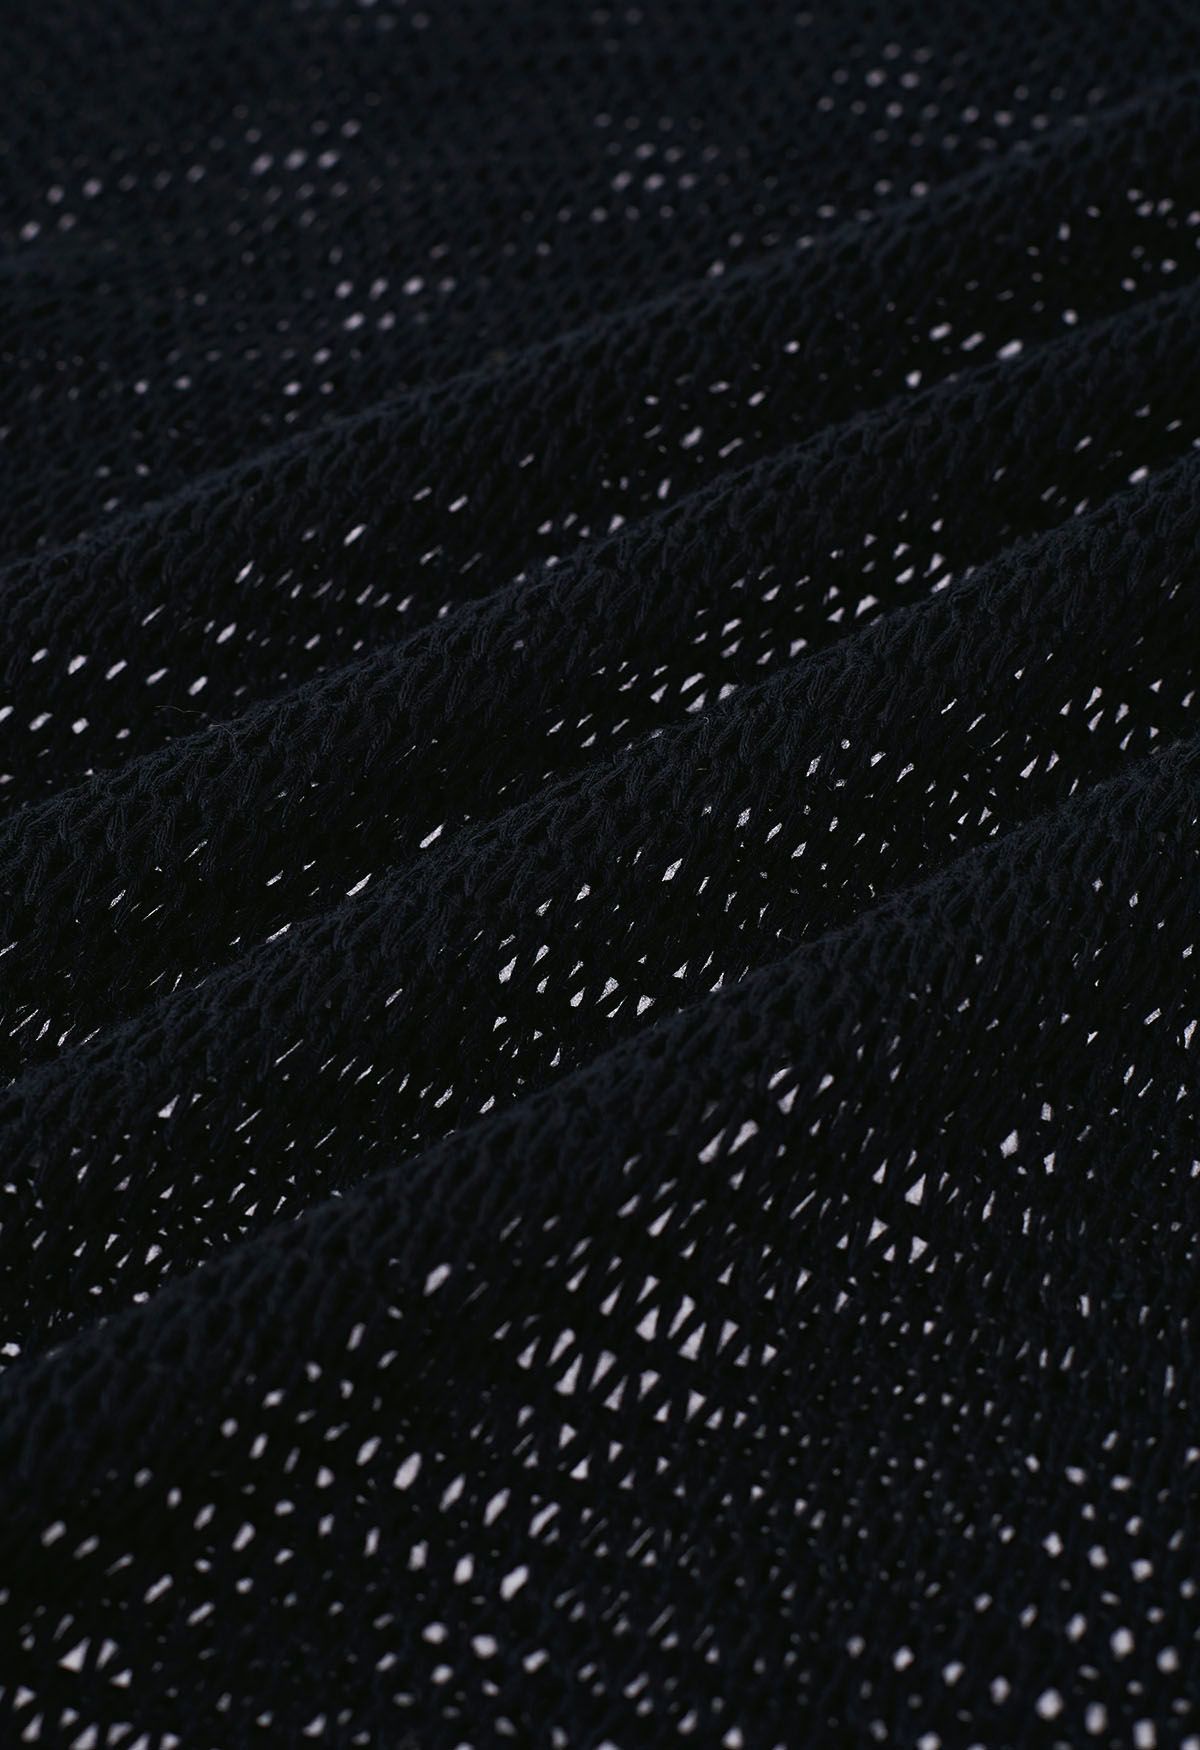 Couverture en tricot pointelle à ourlet frangé en noir